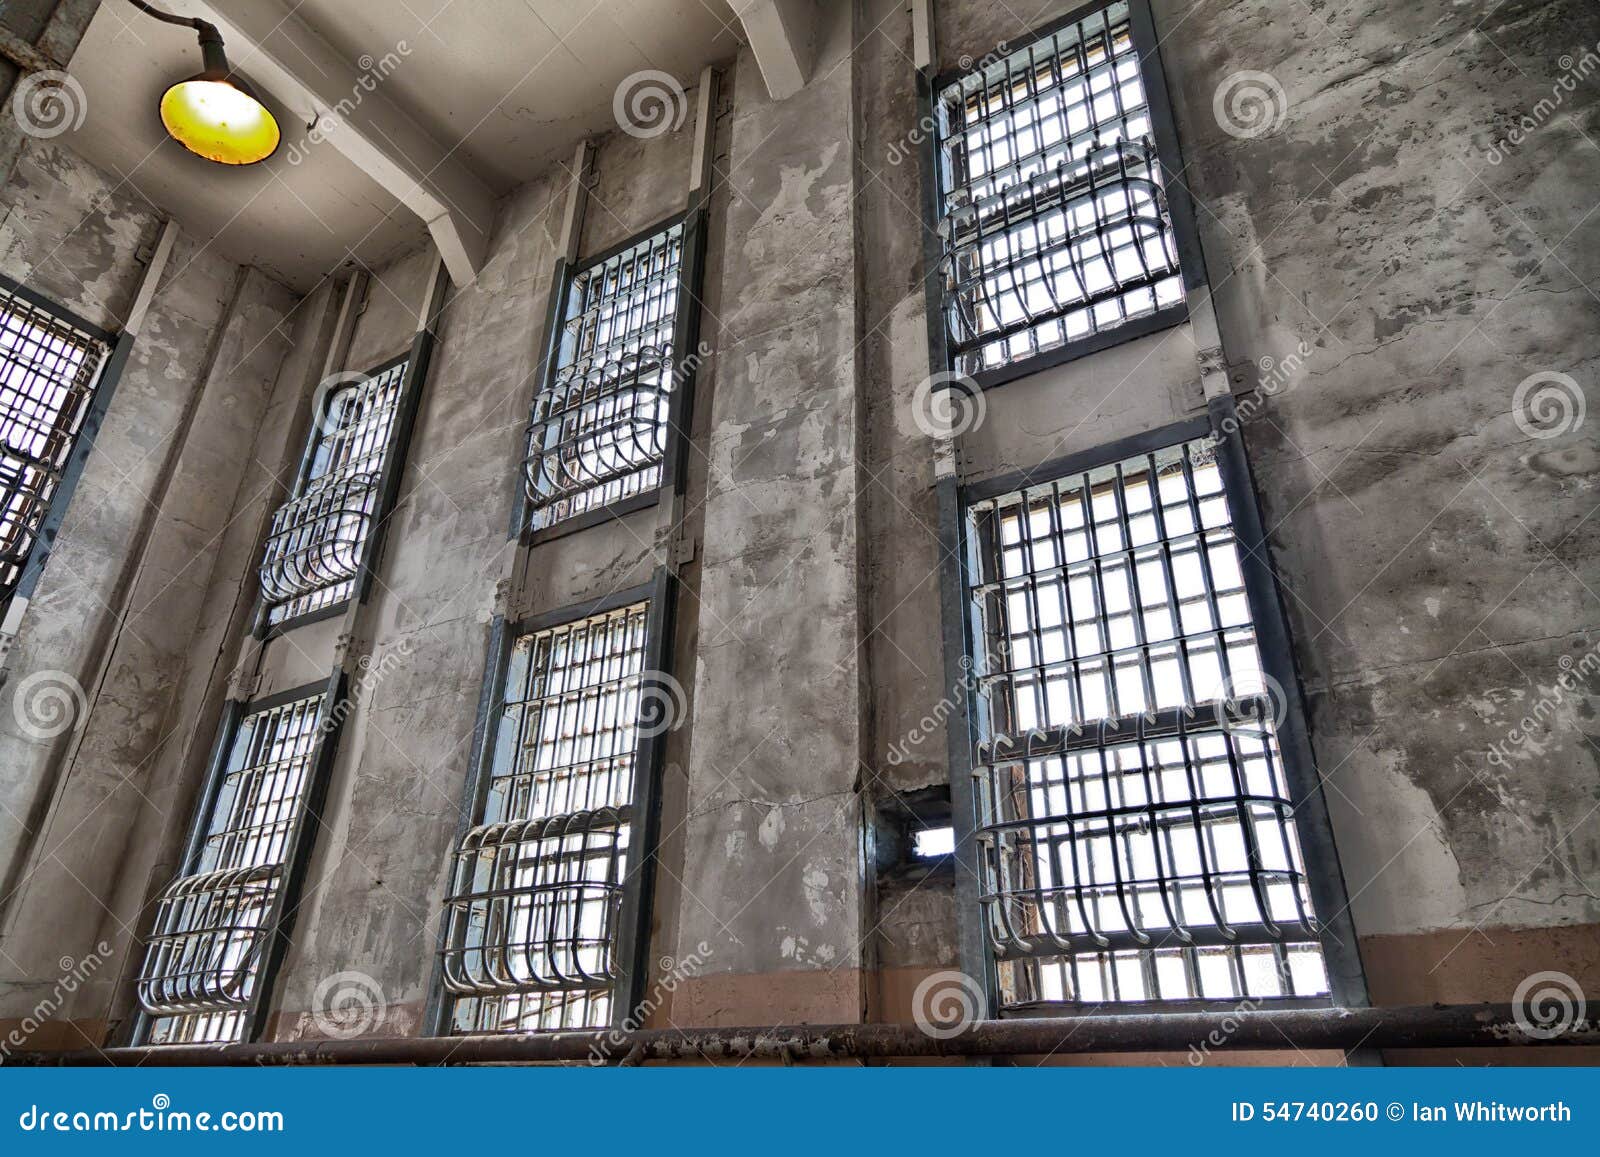 Barras de ventana de la prisión de Alcatraz. Una visión dentro de la prisión de Alcatraz que muestra las barras en las ventanas